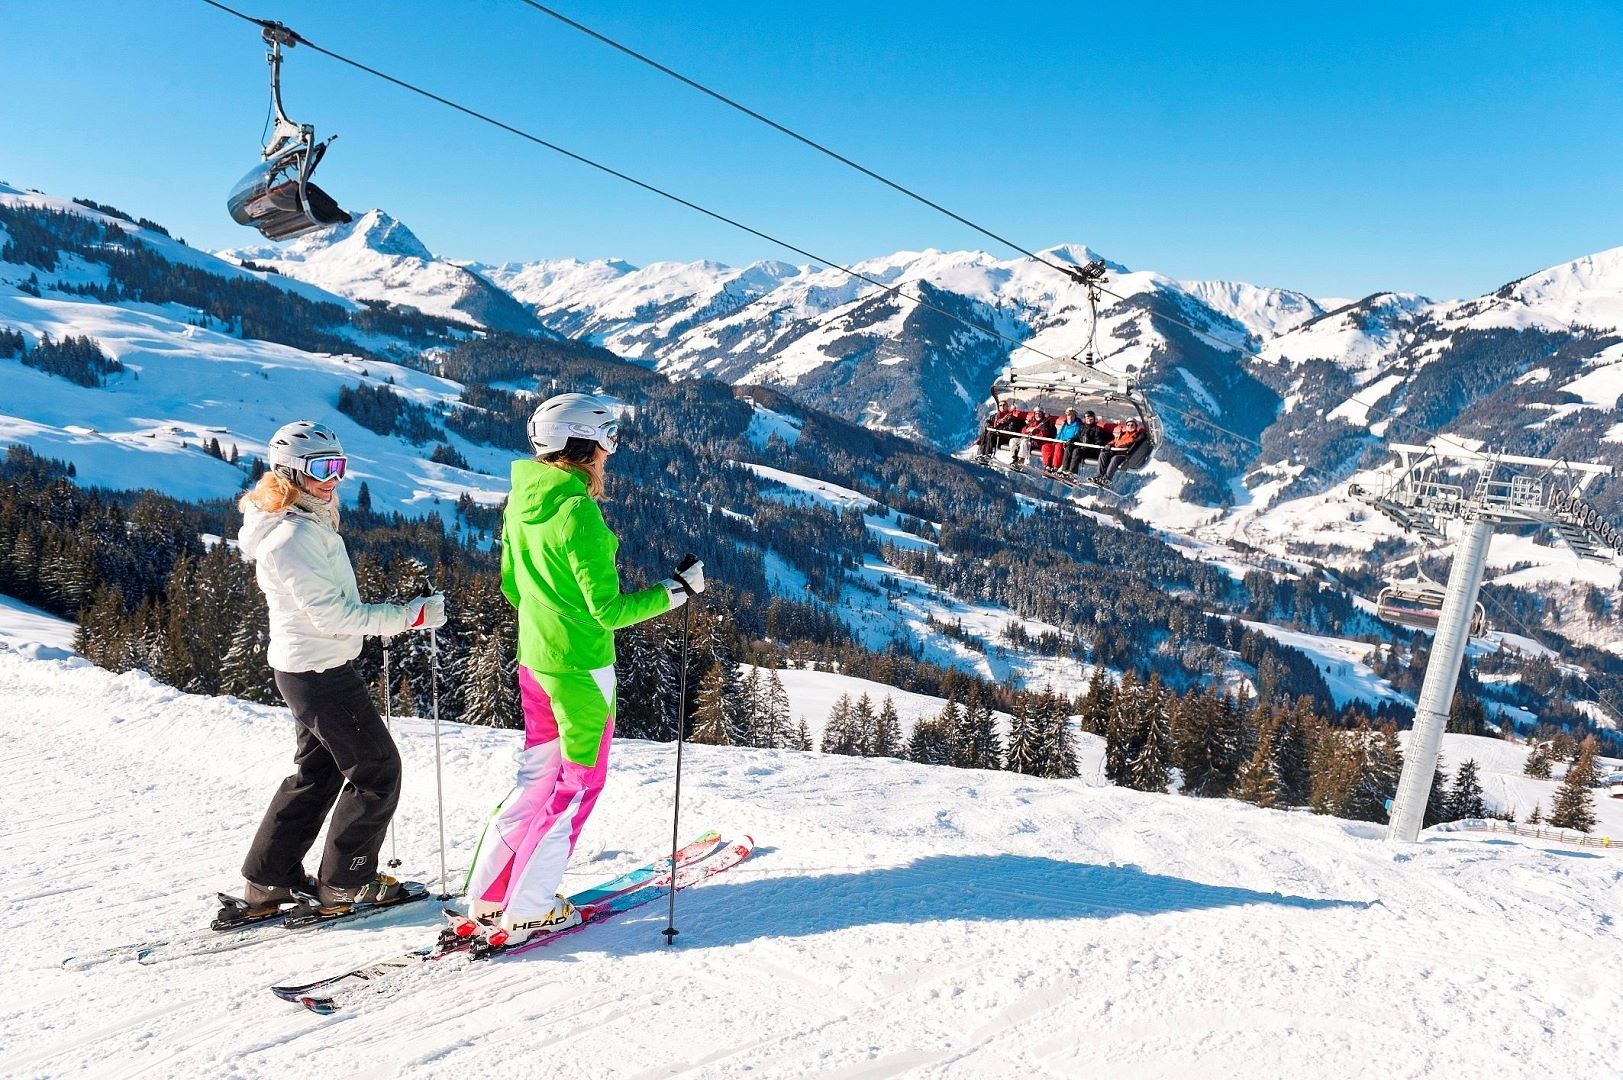 Катание на горнолыжном курорте. Улудаг Турция горнолыжный курорт. Горнолыжный курорт лыжники Австрия. Катание на горных лыжах.